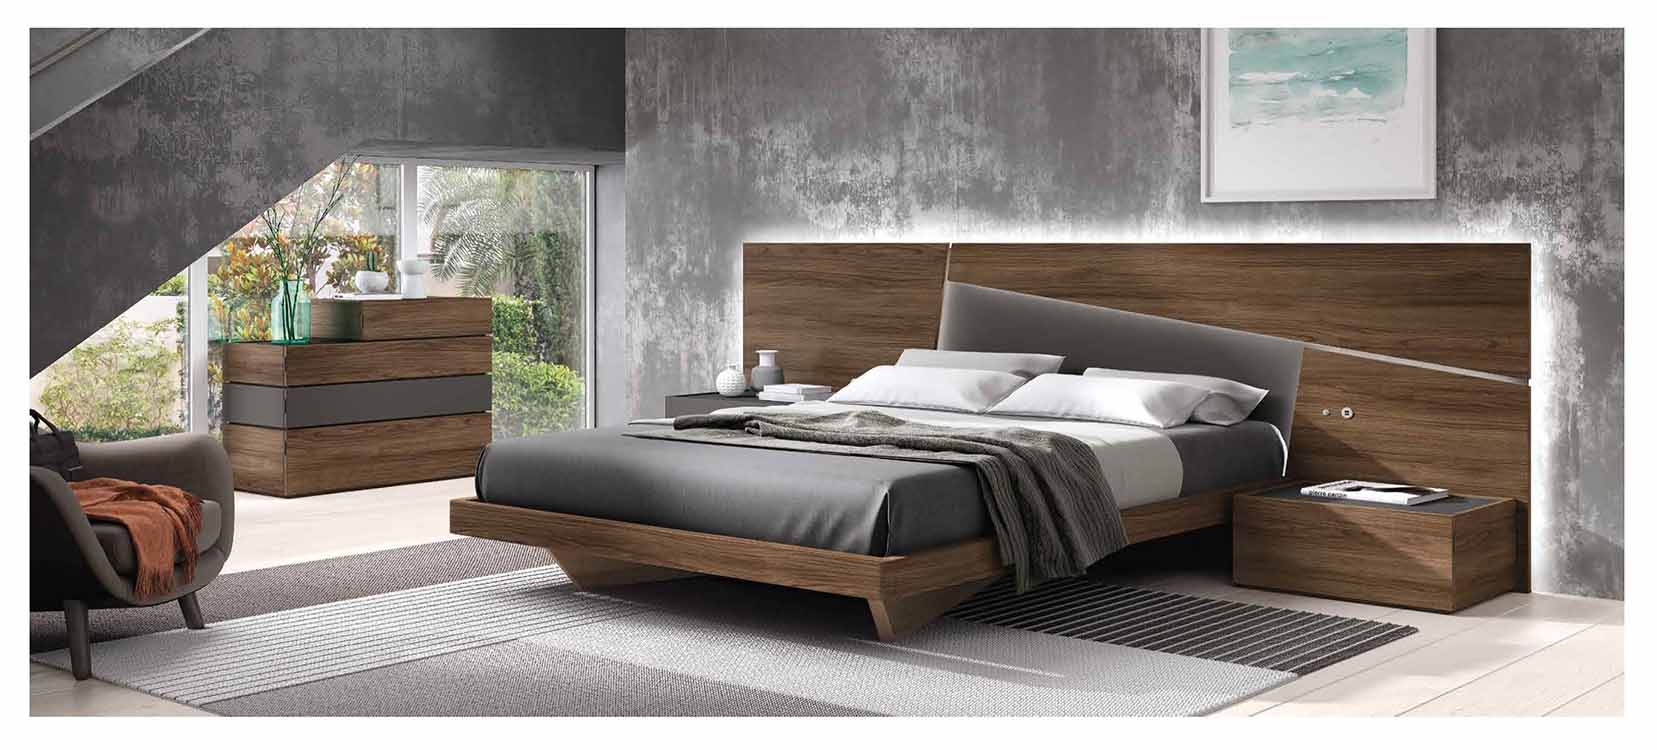 http://www.munozmuebles.net/nueva/catalogo/dormitorios-actuales.html - 
Espectaculares muebles de madera de teka